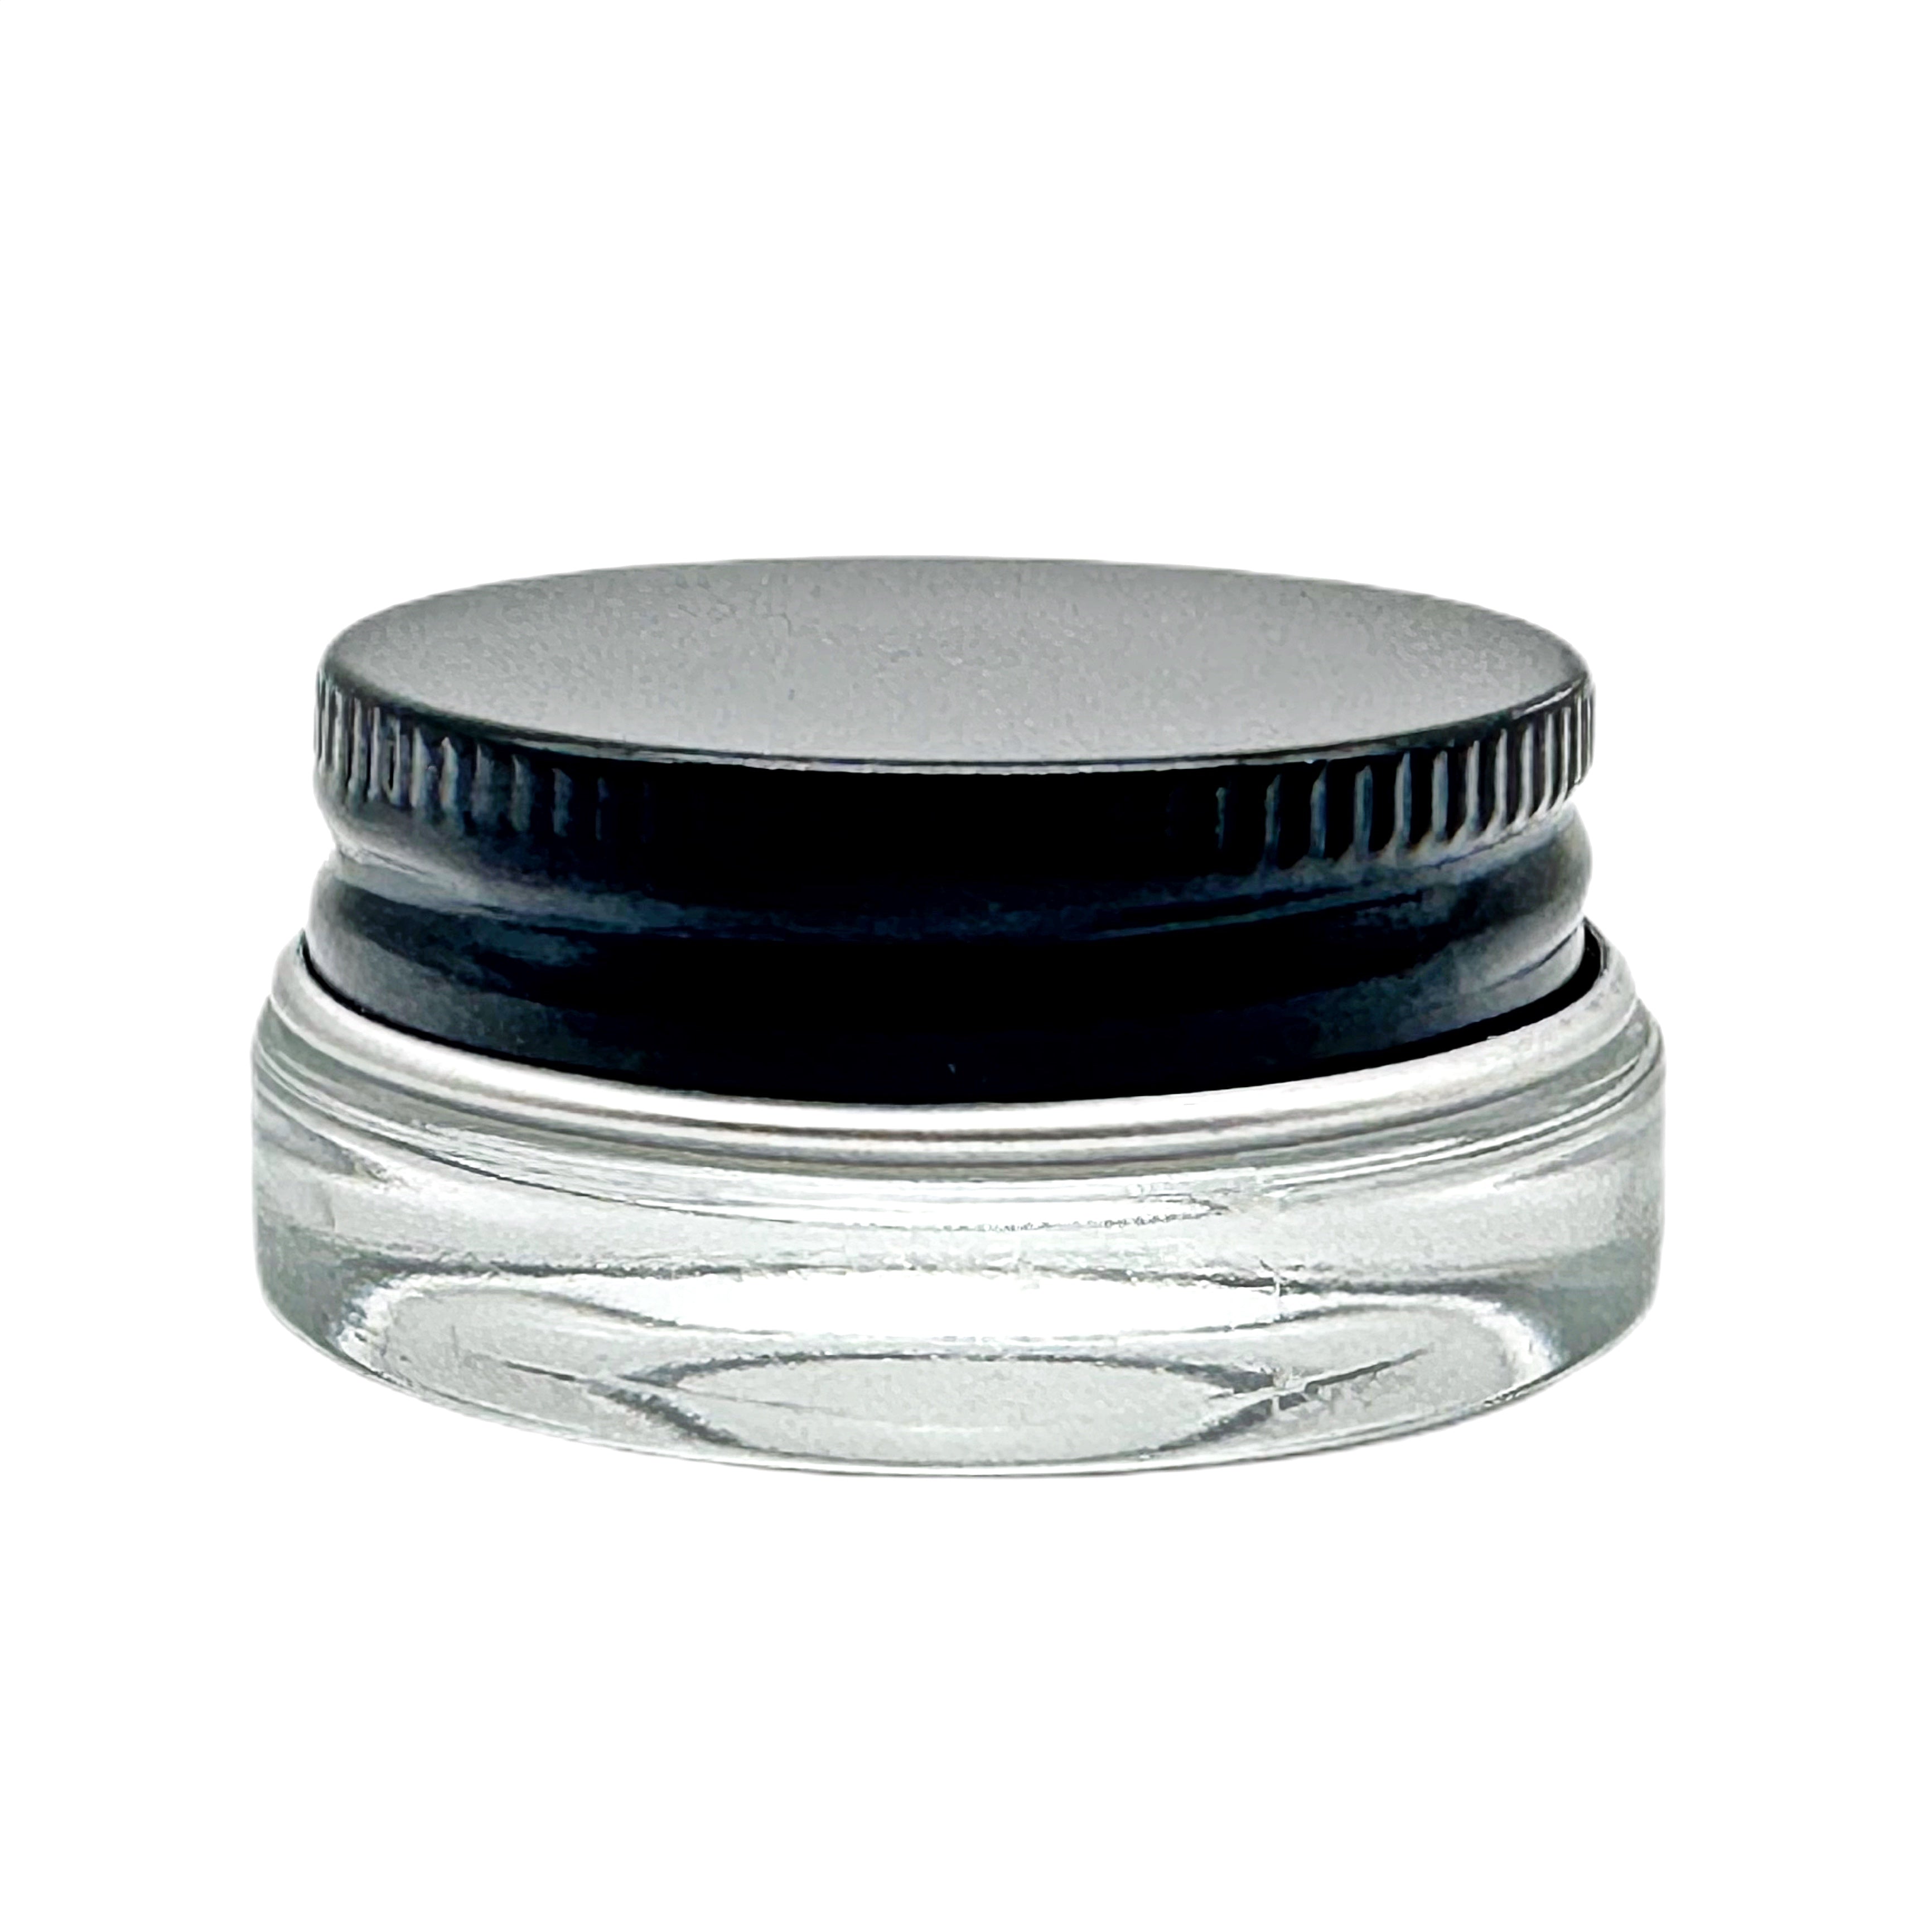 7ml Black Cap Aluminum Cap Glass jar (200pcs)